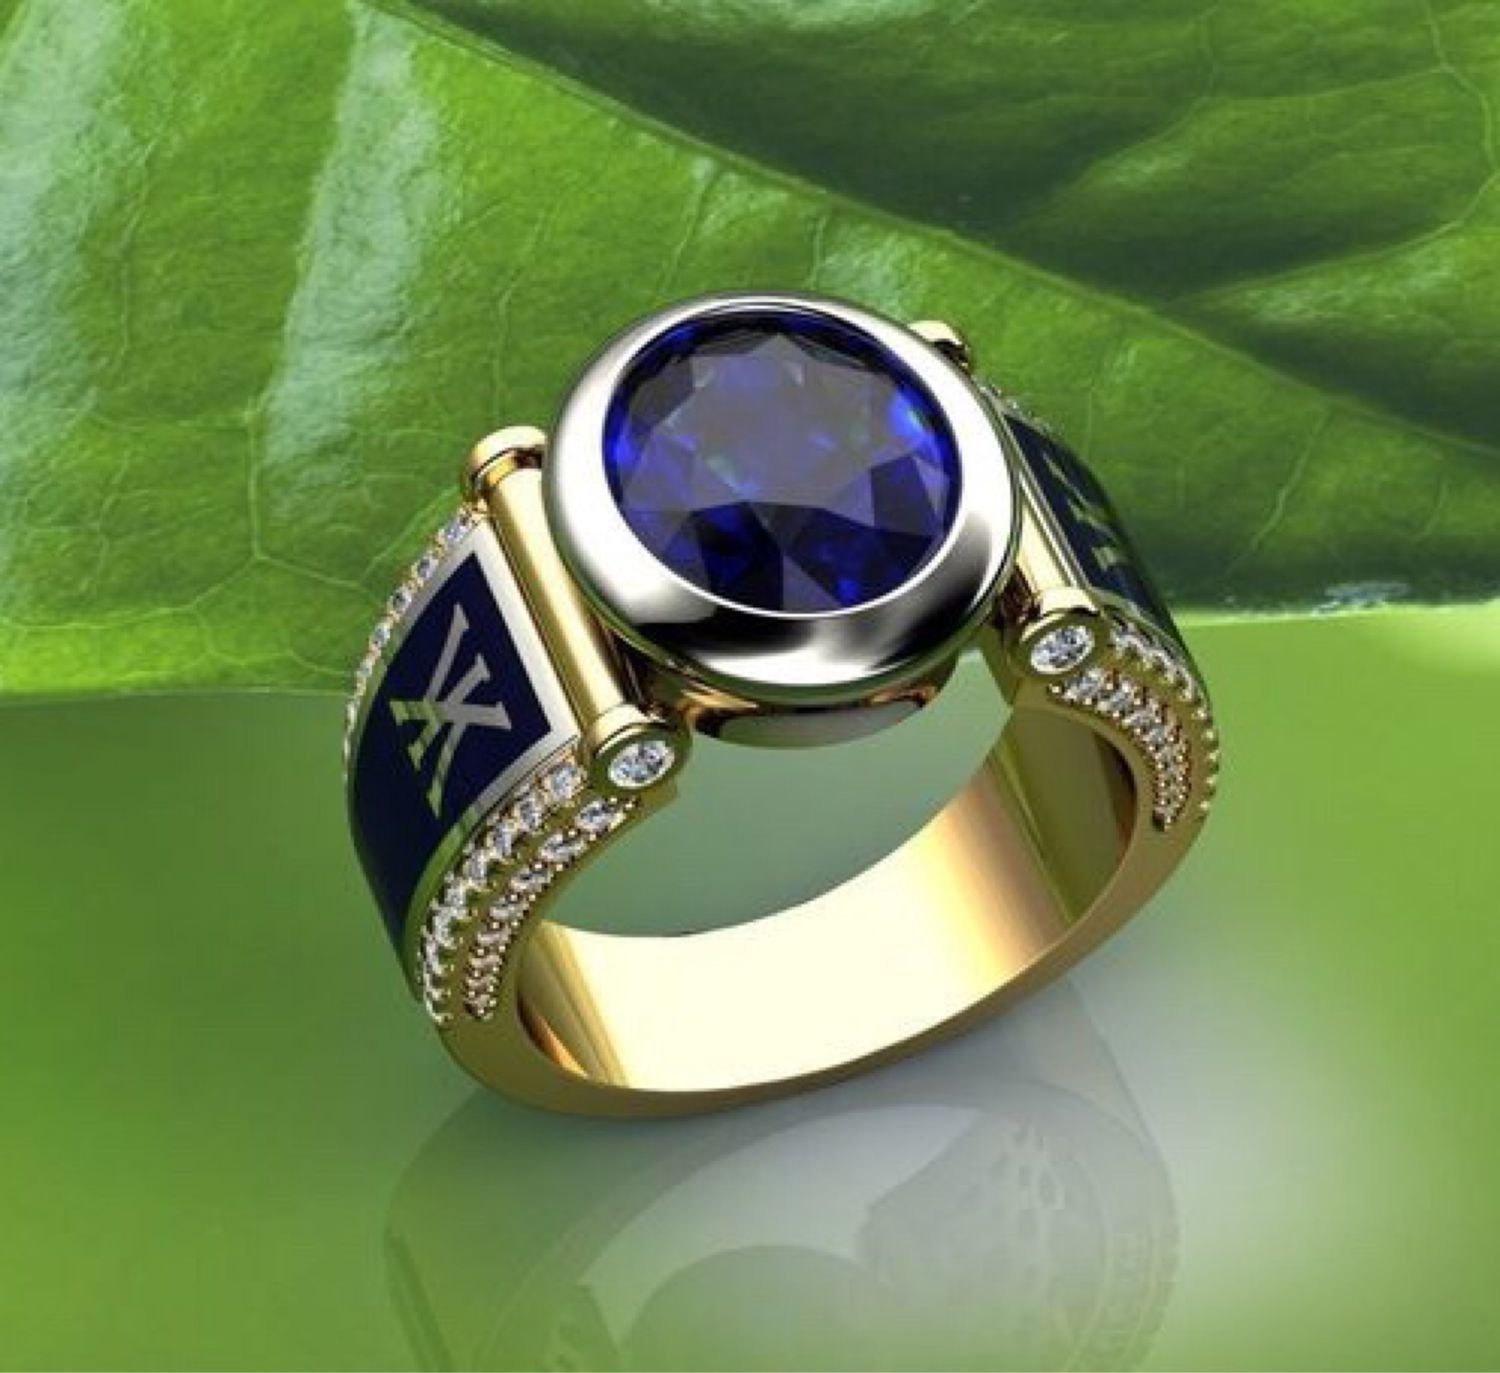 Ювелирные изделия для мужчин. Перстень Sapphire Ring for men. Sapphire for men 700 перстень. Мужской перстень с камнем. Мужские кольца с камнями.